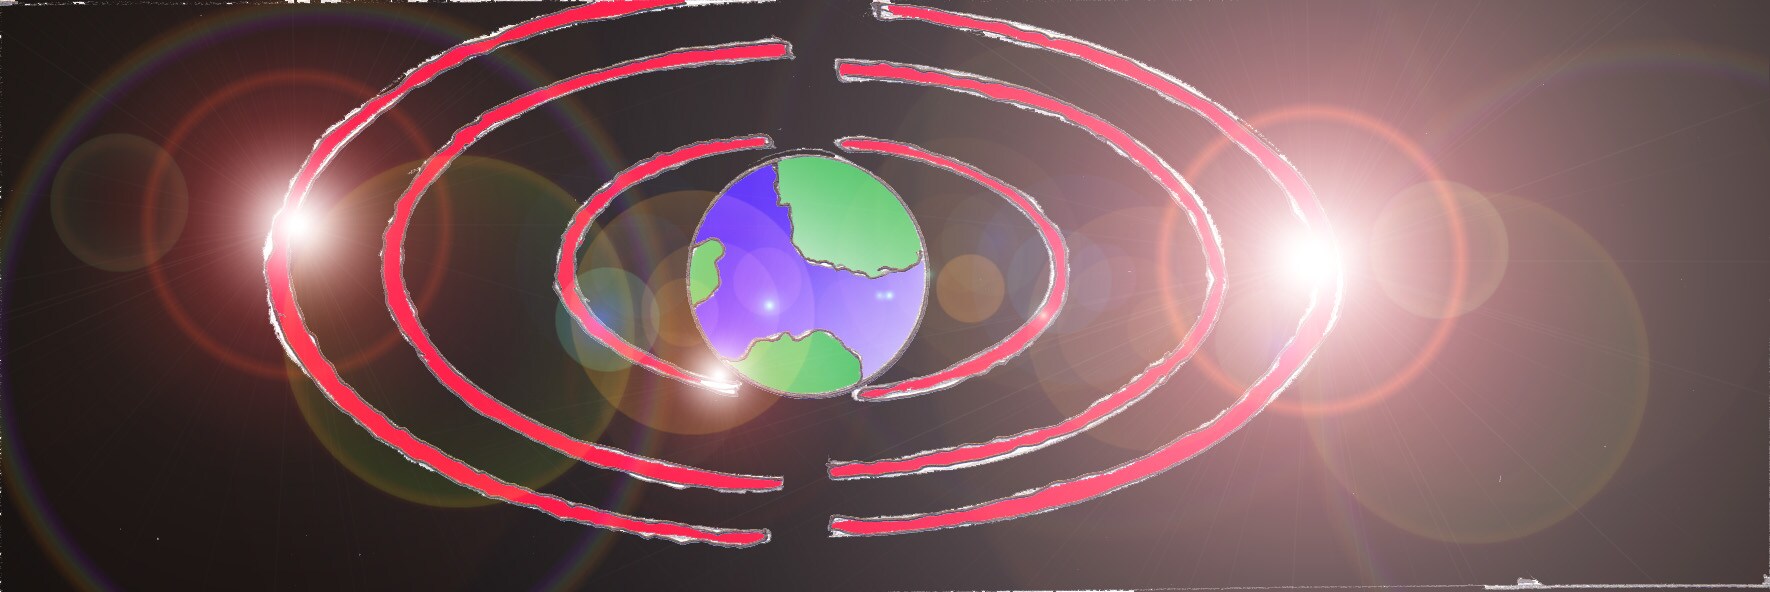 Immagine di onde attorno al globo terrestre (Per leggerne la descrizione proseguire nel link). Onde concentriche di colore rosa shocking che dal globo terrestre si propagano nell'etere. Sullo sfondo dei punti di luce illuminano la scena.